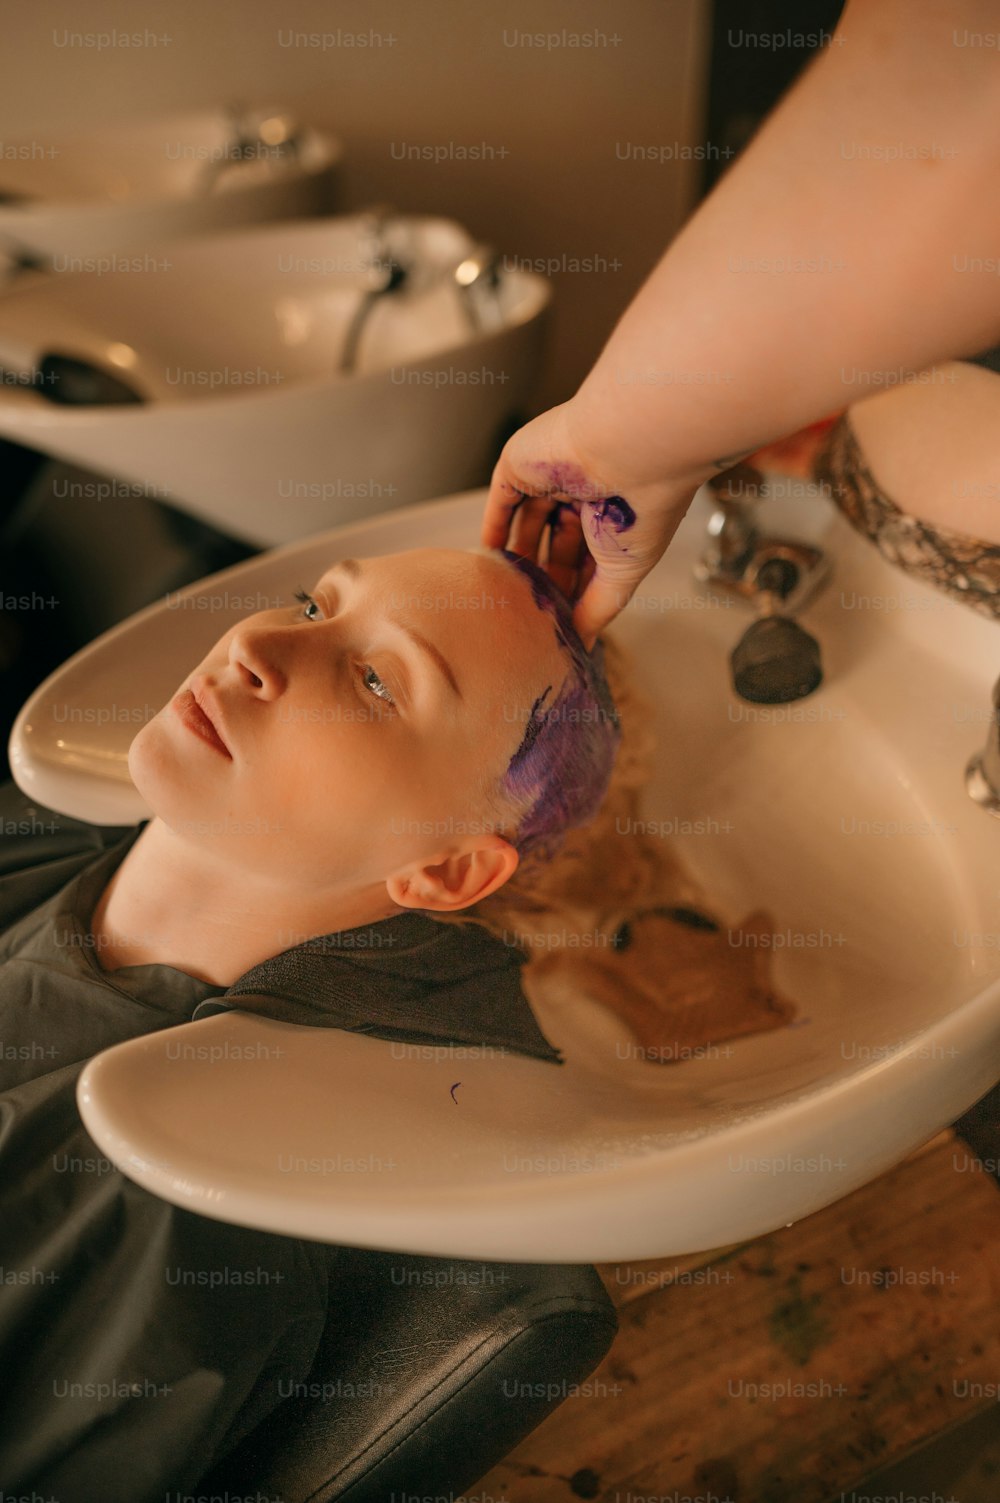 Una mujer se lava el pelo en un fregadero